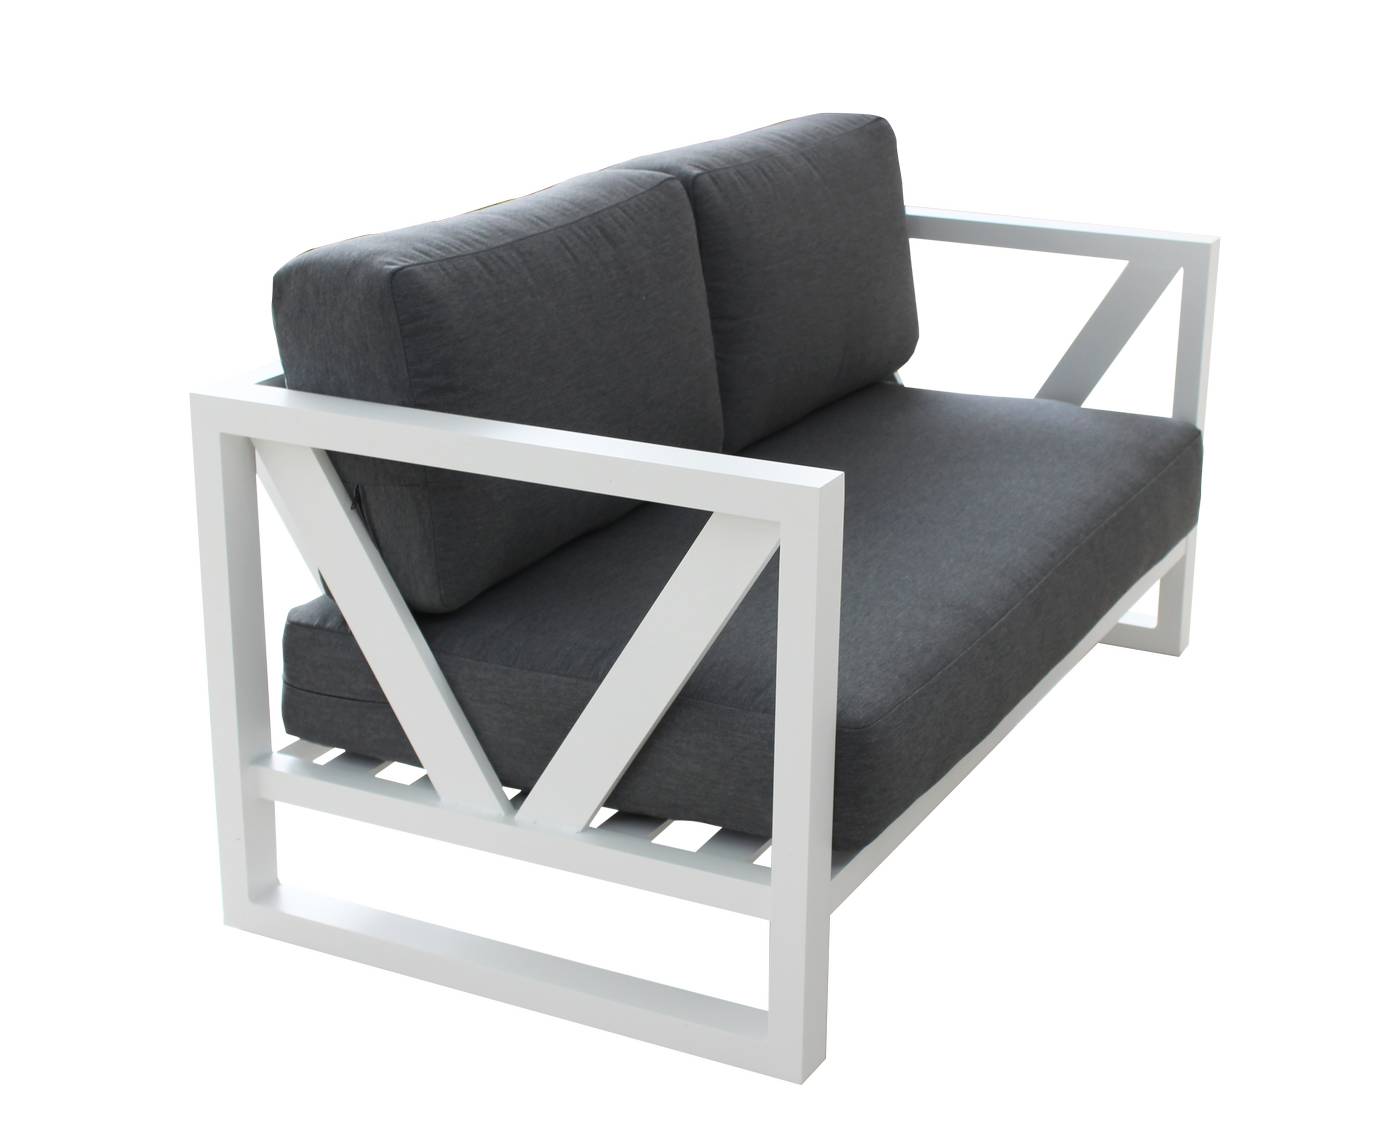 Lujoso sofá de 2 plazas con cojines  desenfundables. Robusta estructura aluminio color blanco, antracita o champagne.